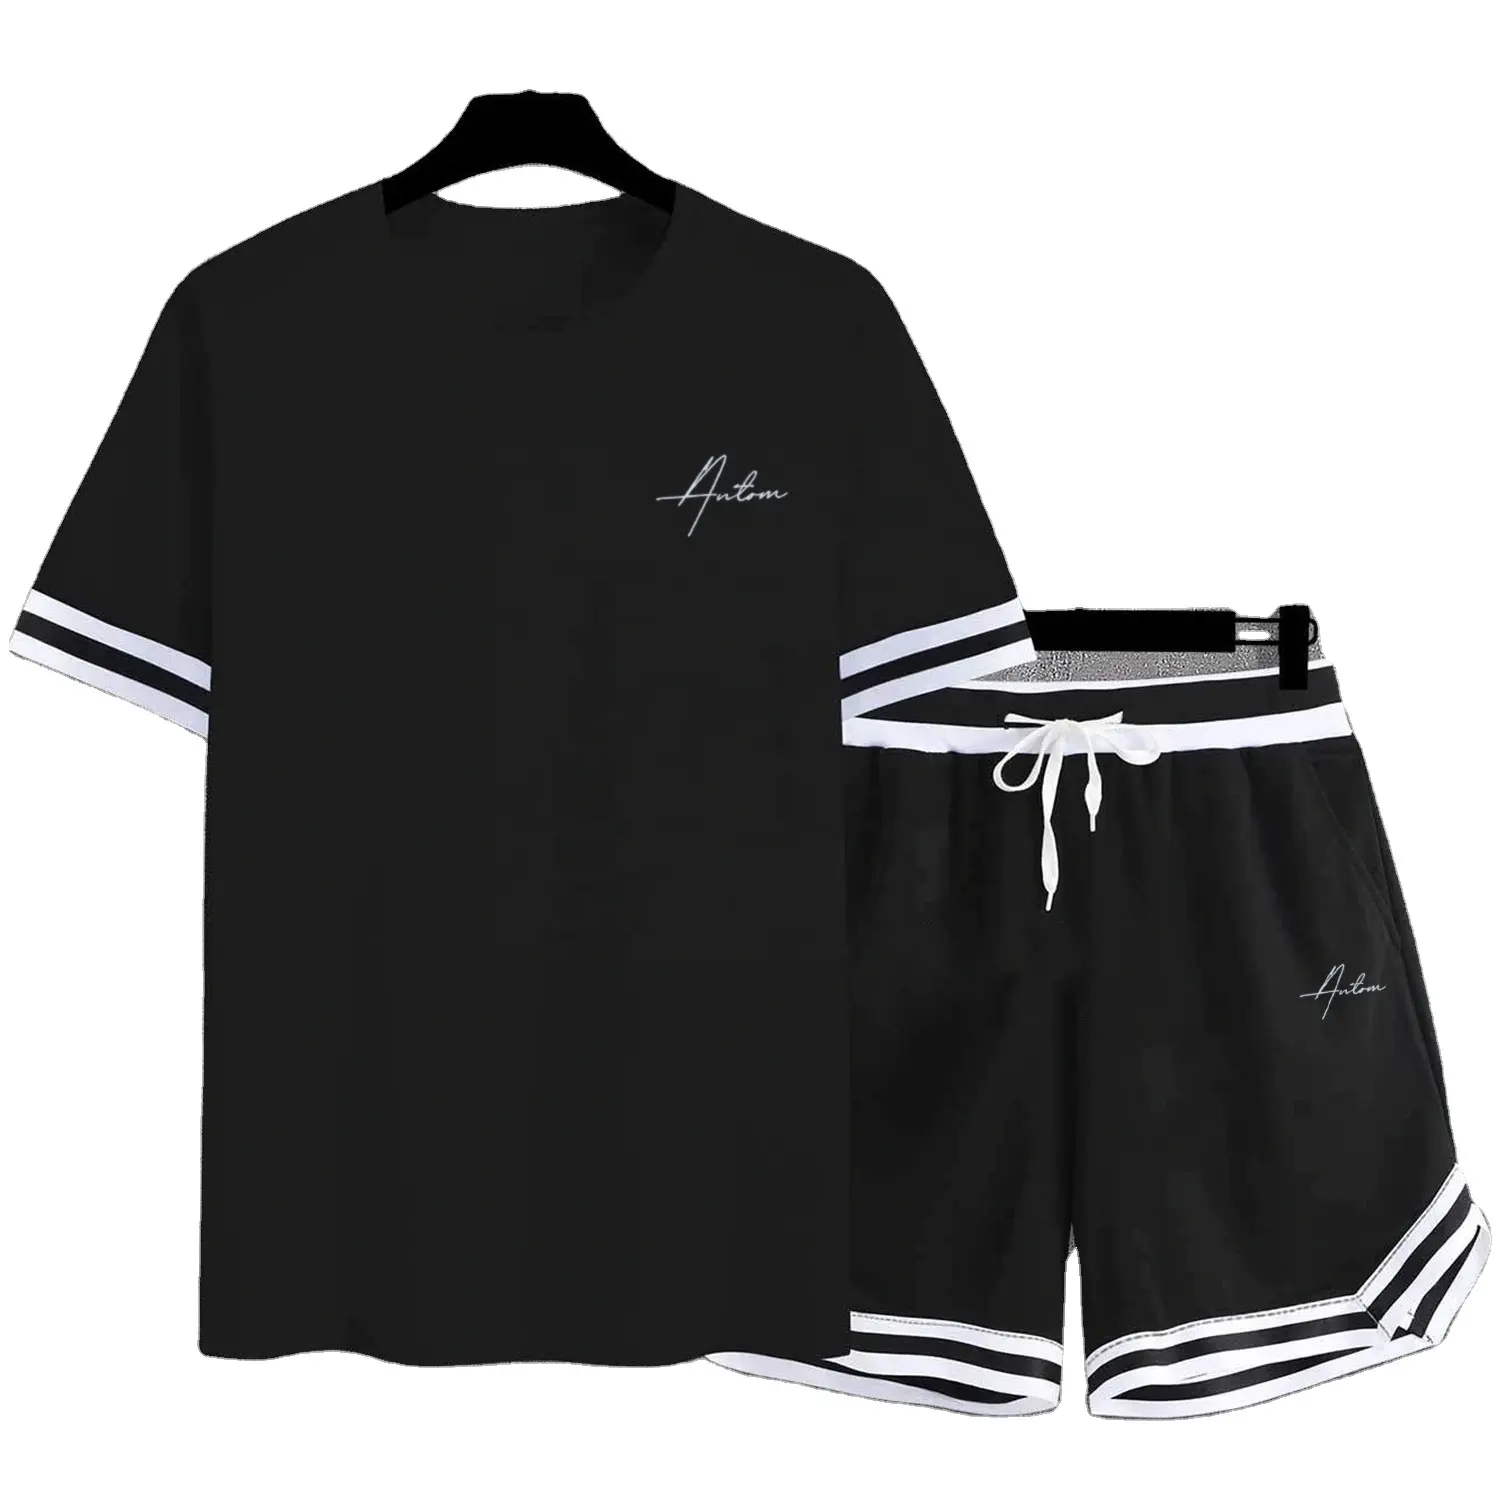 थोक सस्ते स्लिम फिट पुरुषों जुड़वां सेट कस्टम टीशर्ट परिवार संगठन के साथ मिलान टी शर्ट शॉर्ट्स 100% कपास सेनील कढ़ाई